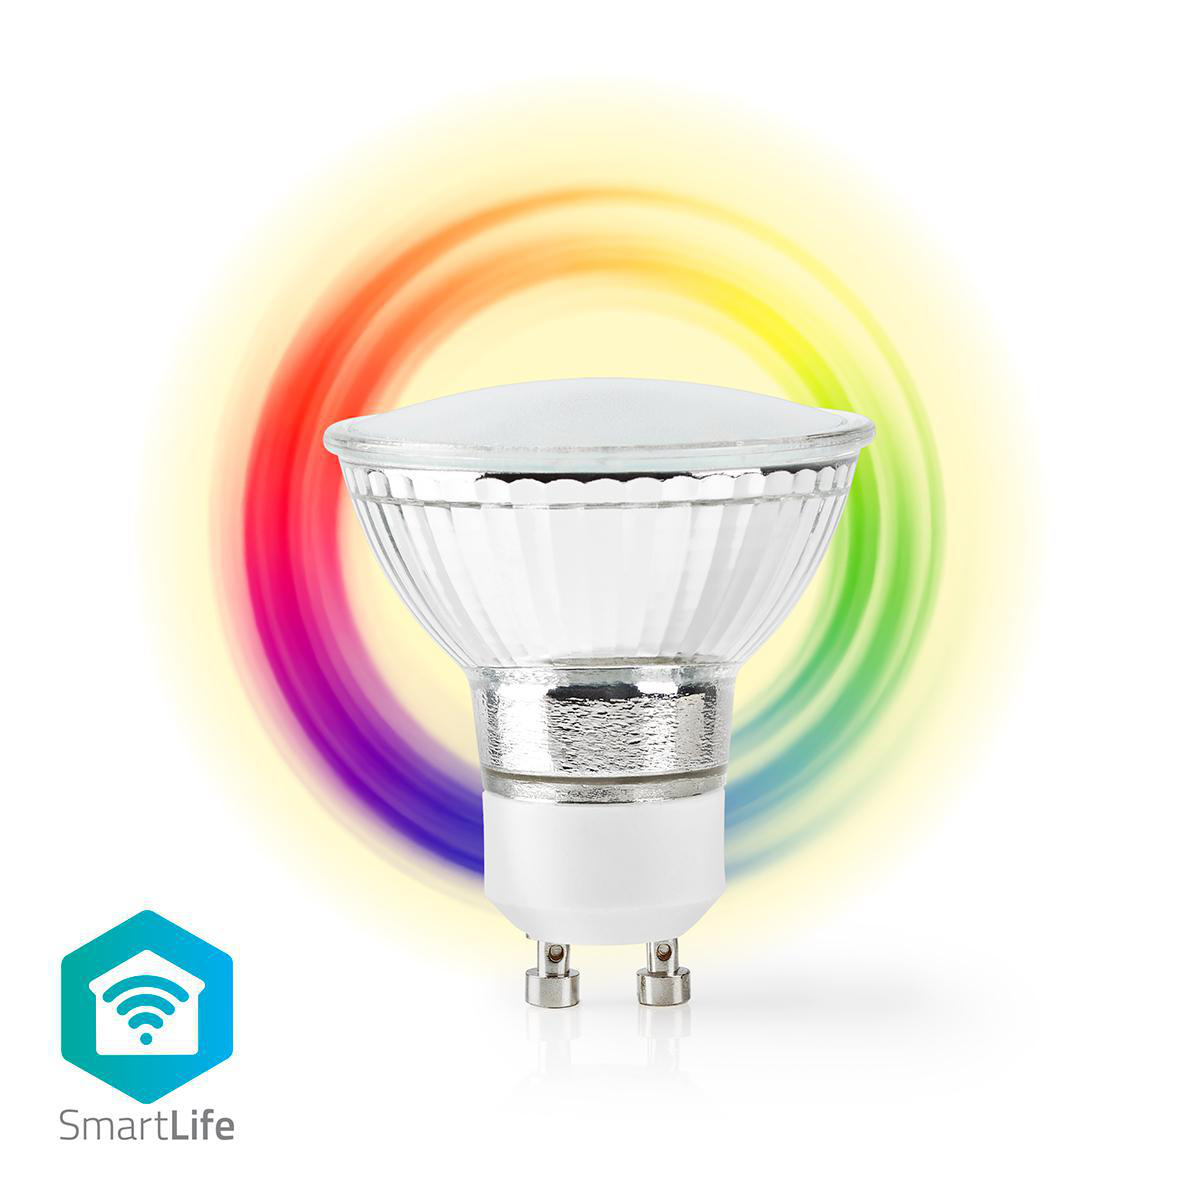 Nedis SmartLife chytrá LED žárovka GU10 5W 330lm barevná + teplá bílá (WIFILC10CRGU10)